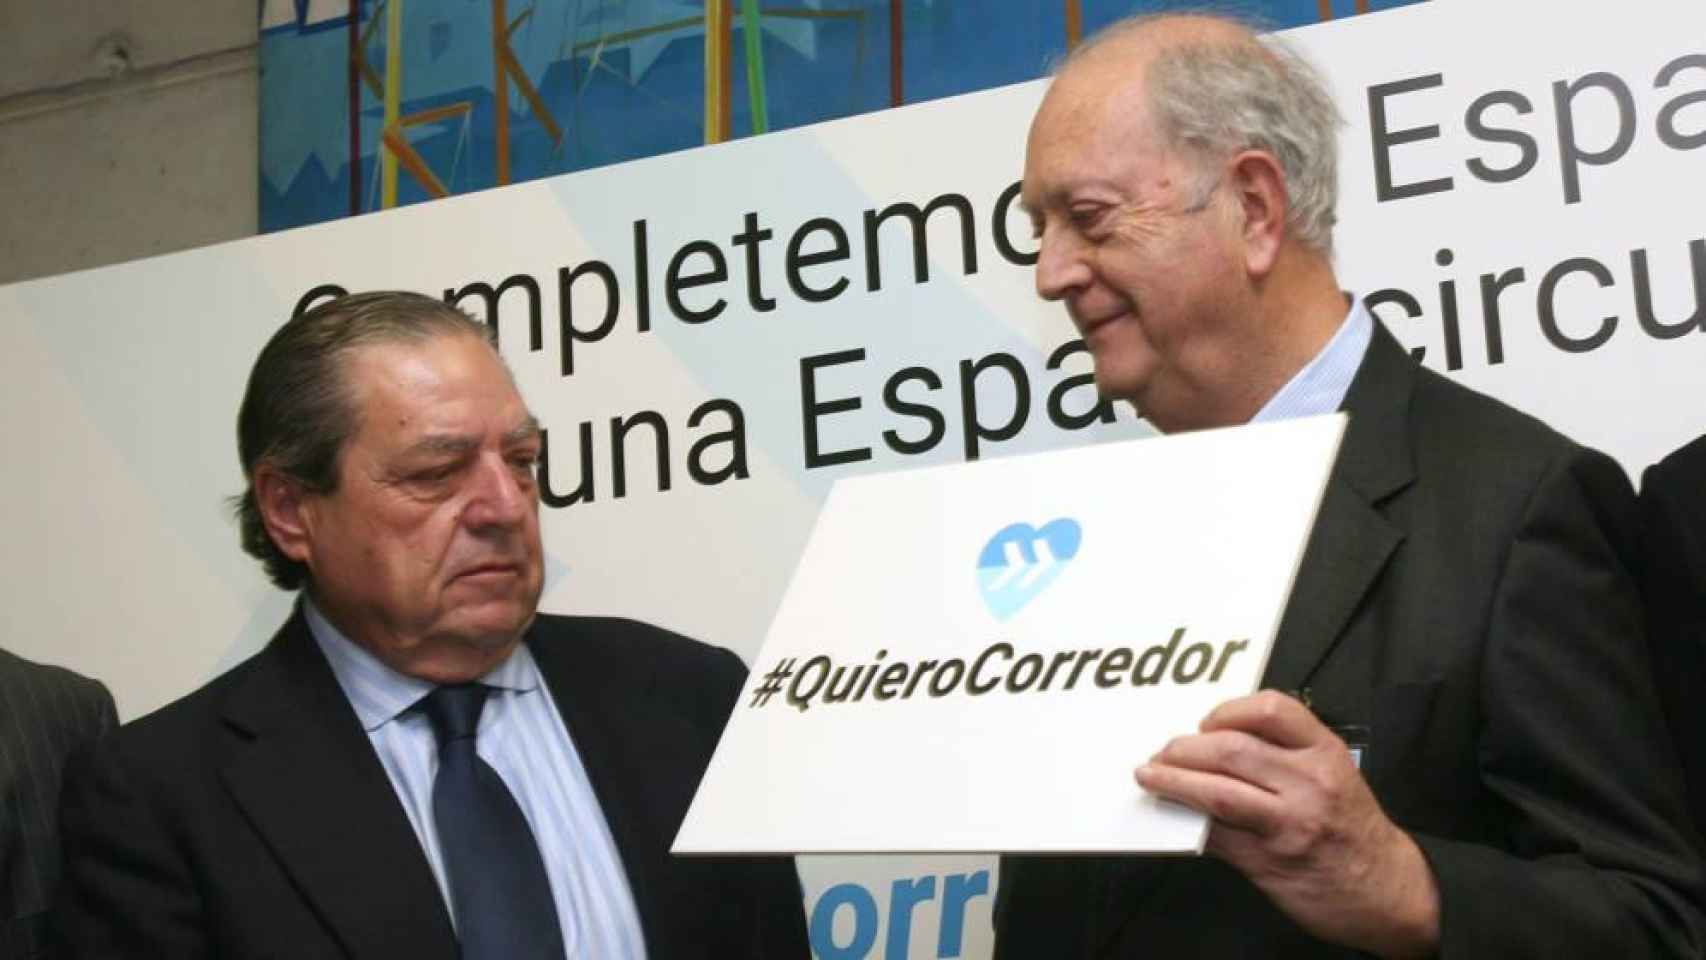 El presidente de la Asociación Valenciana de Empresarios (AVE), Vicente Boluda, junto a Juan José Brugera, presidente del Círculo de Economía, en un acto a favor del Corredor del Mediterráneo /Efe